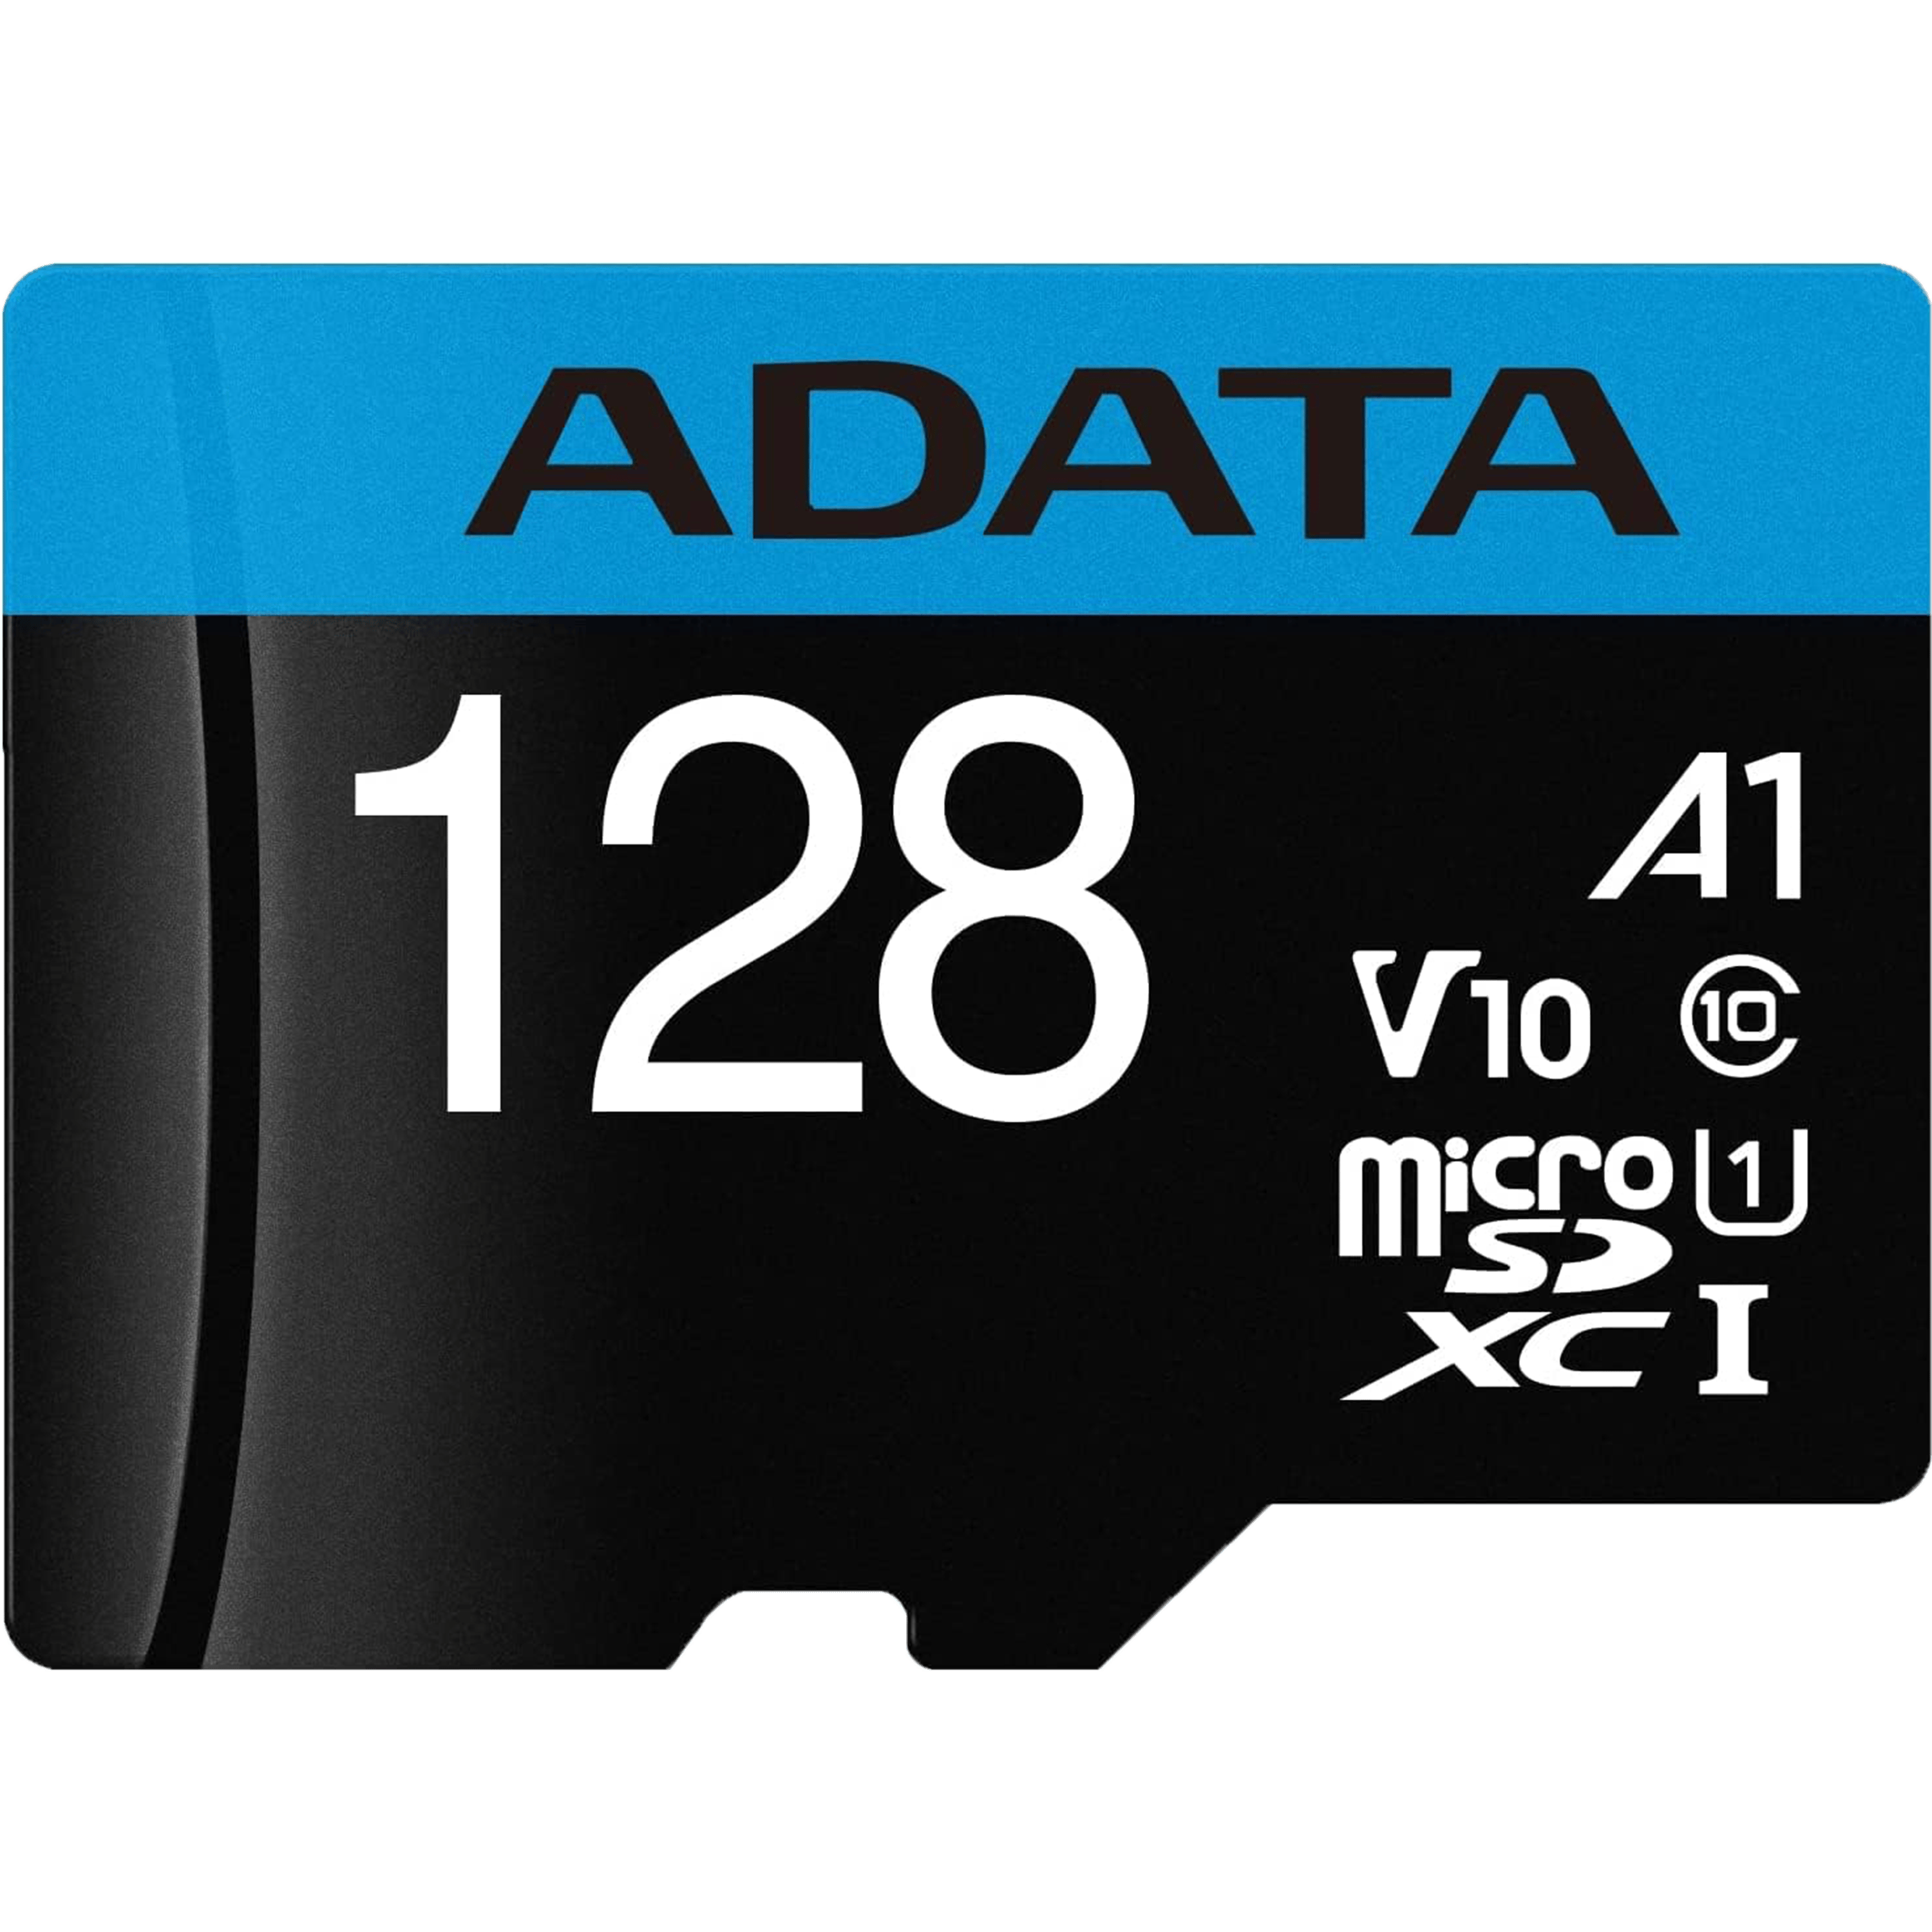 כרטיס זיכרון עם מתאם ADATA Premier microSDHC/SDXC UHS-I Class10 128GB - צבע שחור חמש שנות אחריות ע